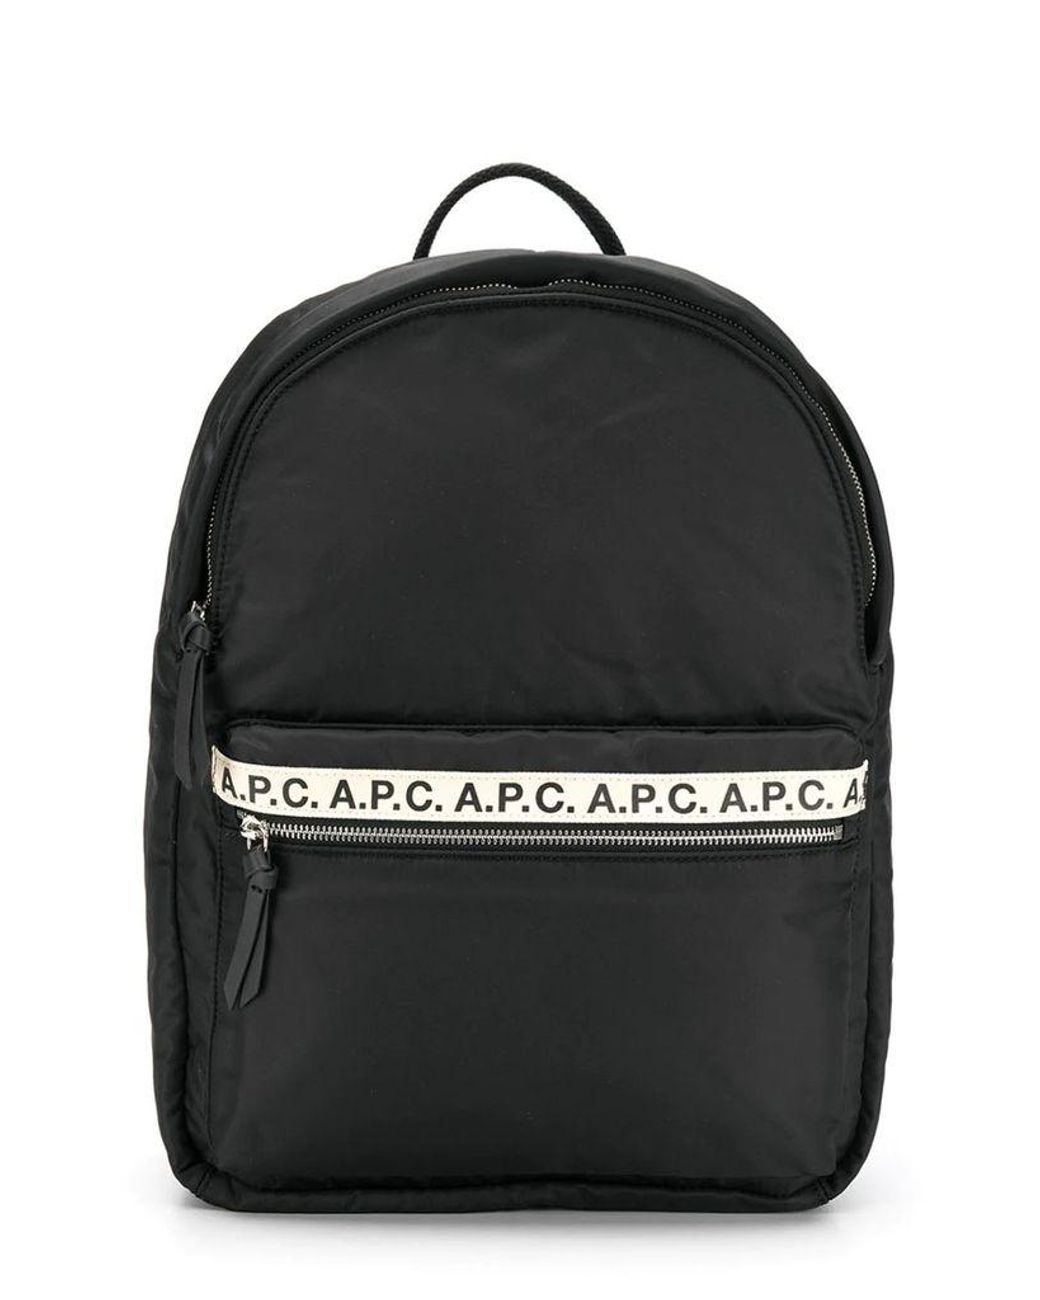 A.P.C. Black Backpack for Men - Lyst